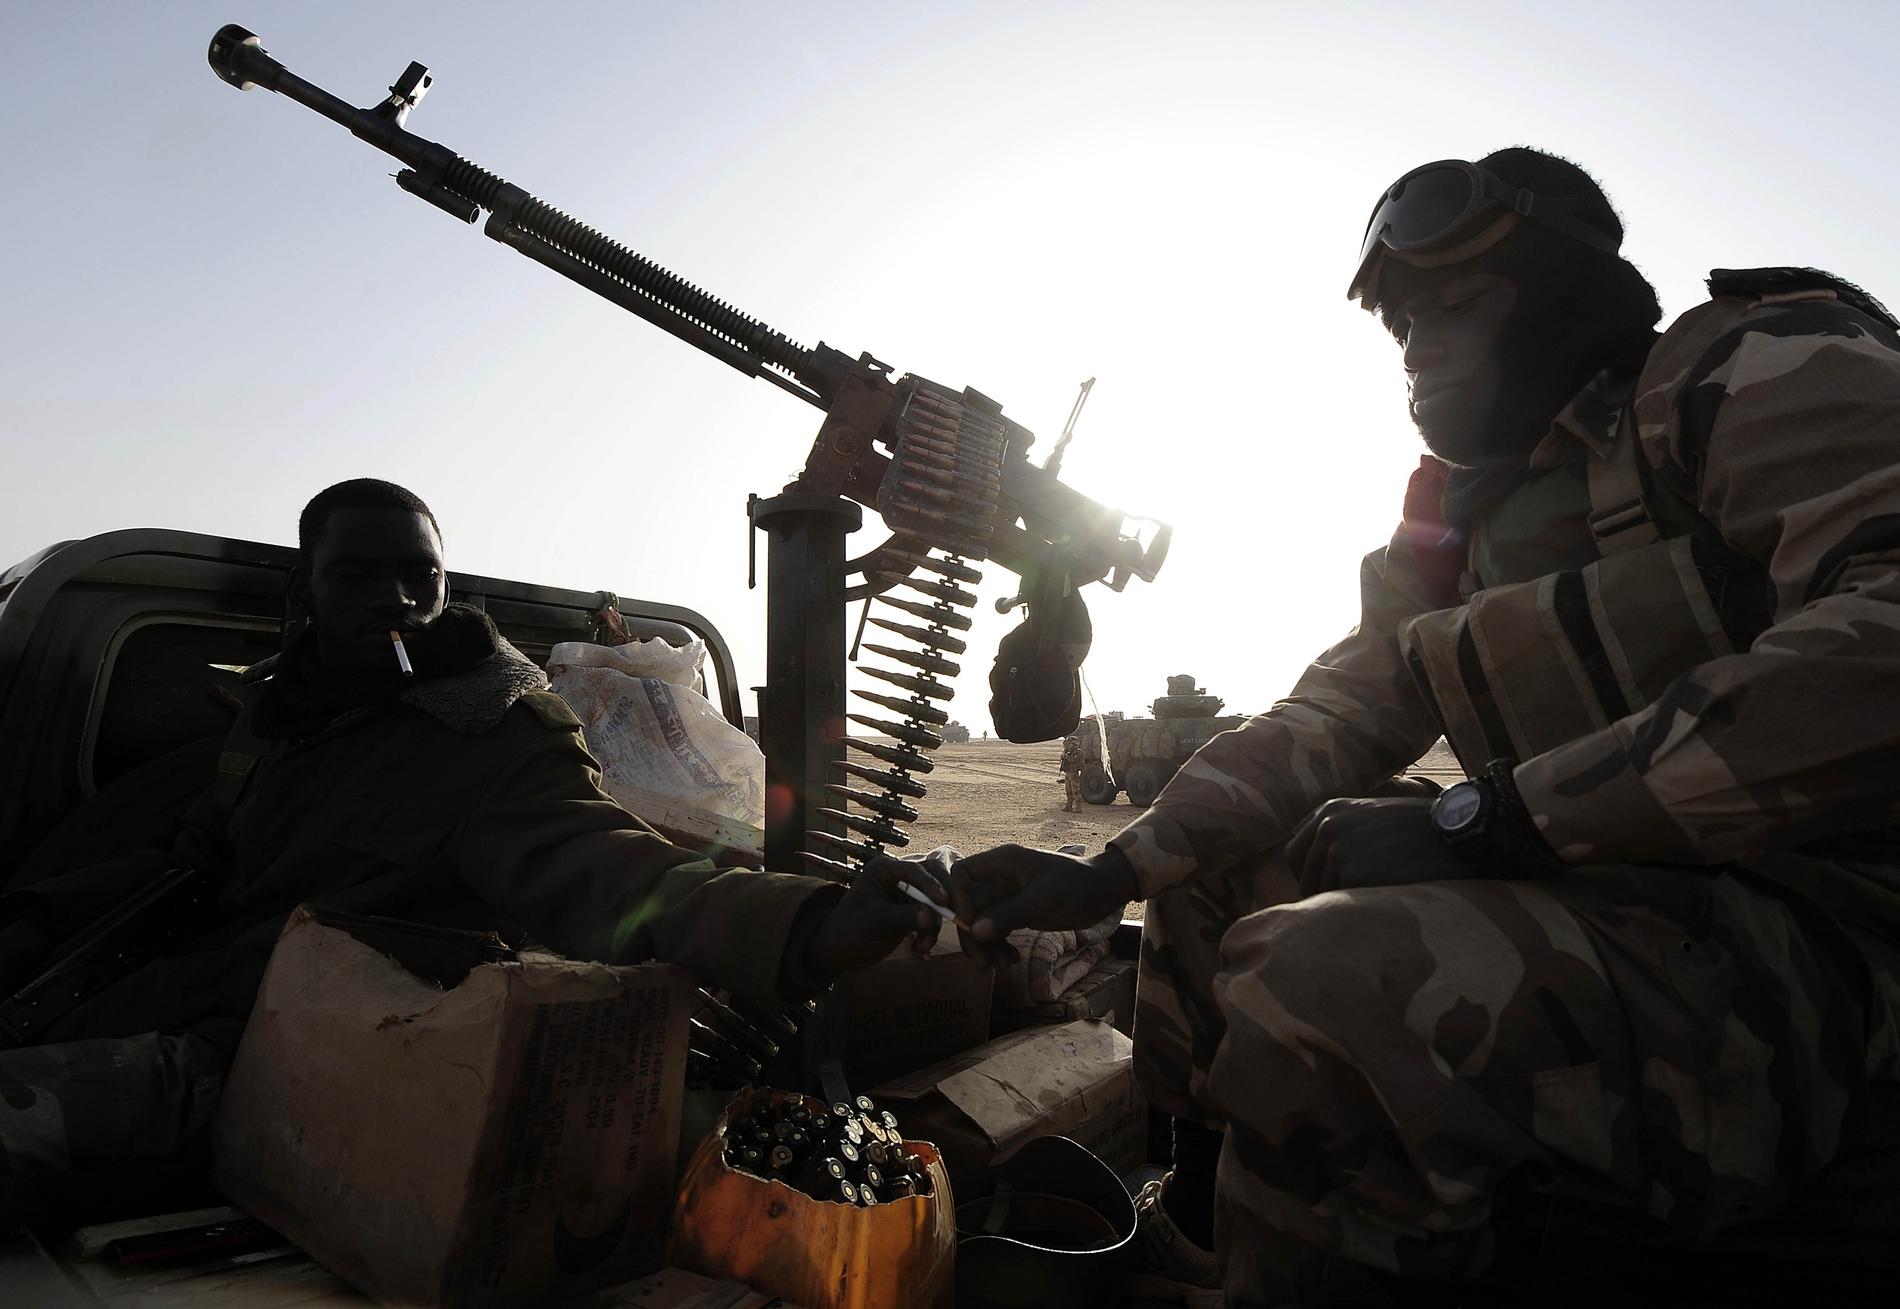 Fyra soldater har blivit dödade i Mali. Här sitter två andra soldater i ett fordon i norra Mali, i en bild som togs år 2013. Arkivbild.